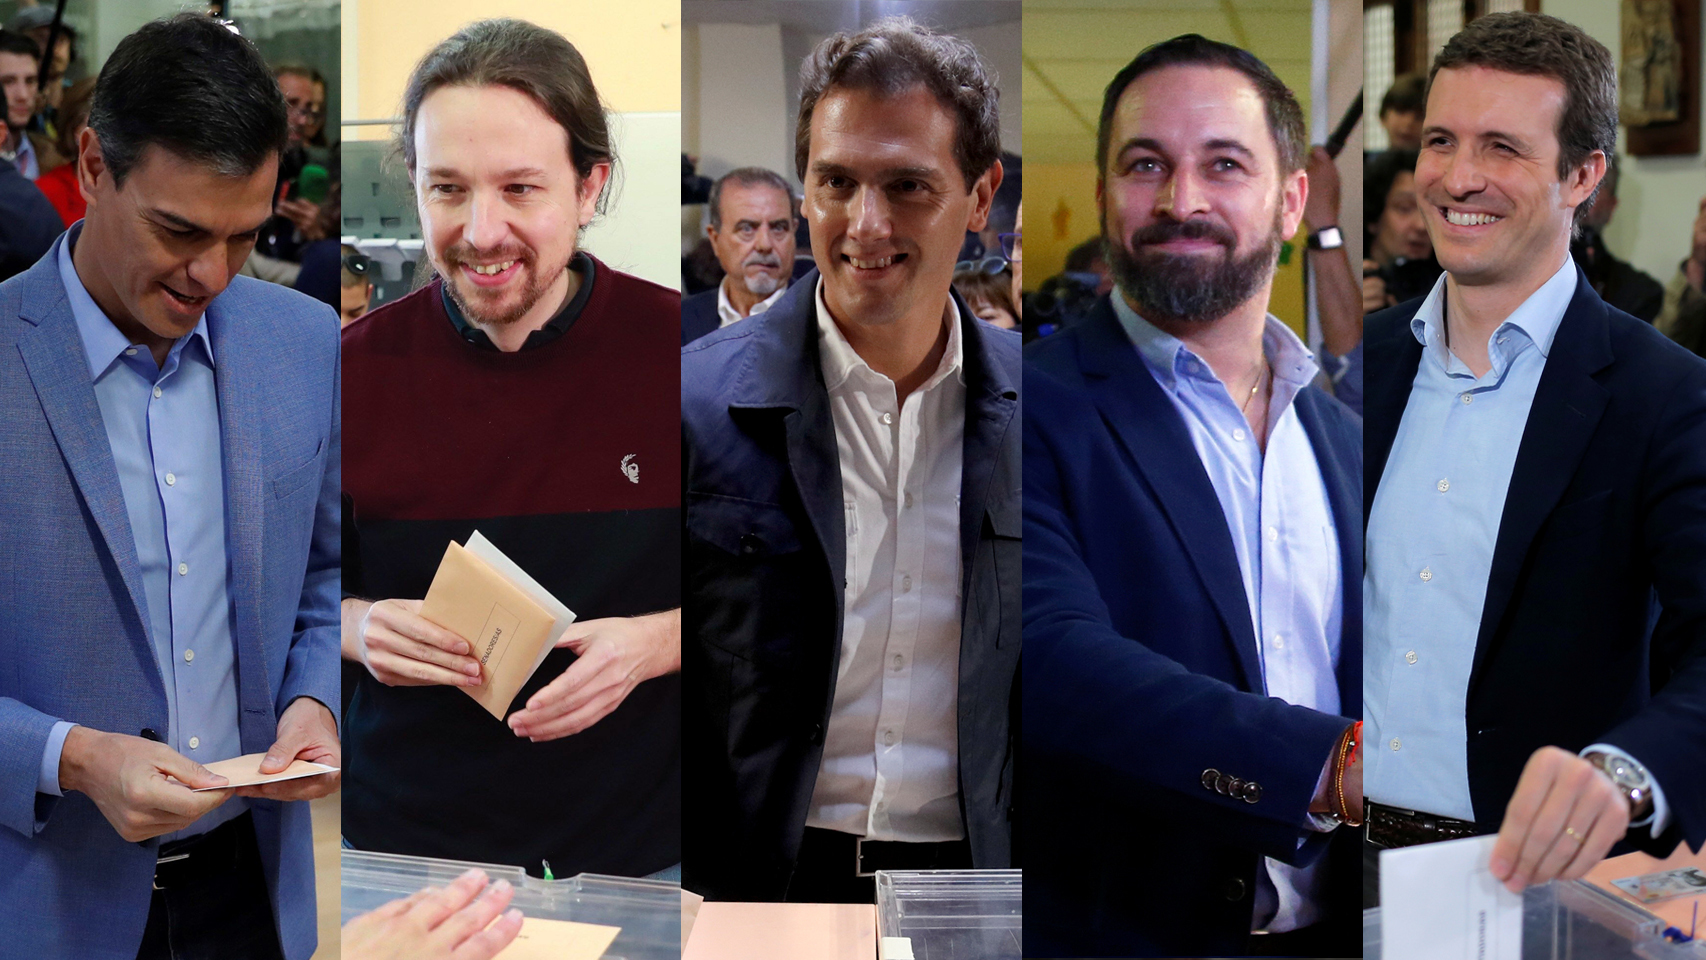 En vivo | Los cinco candidatos ya han votado en una jornada decisiva para la democracia